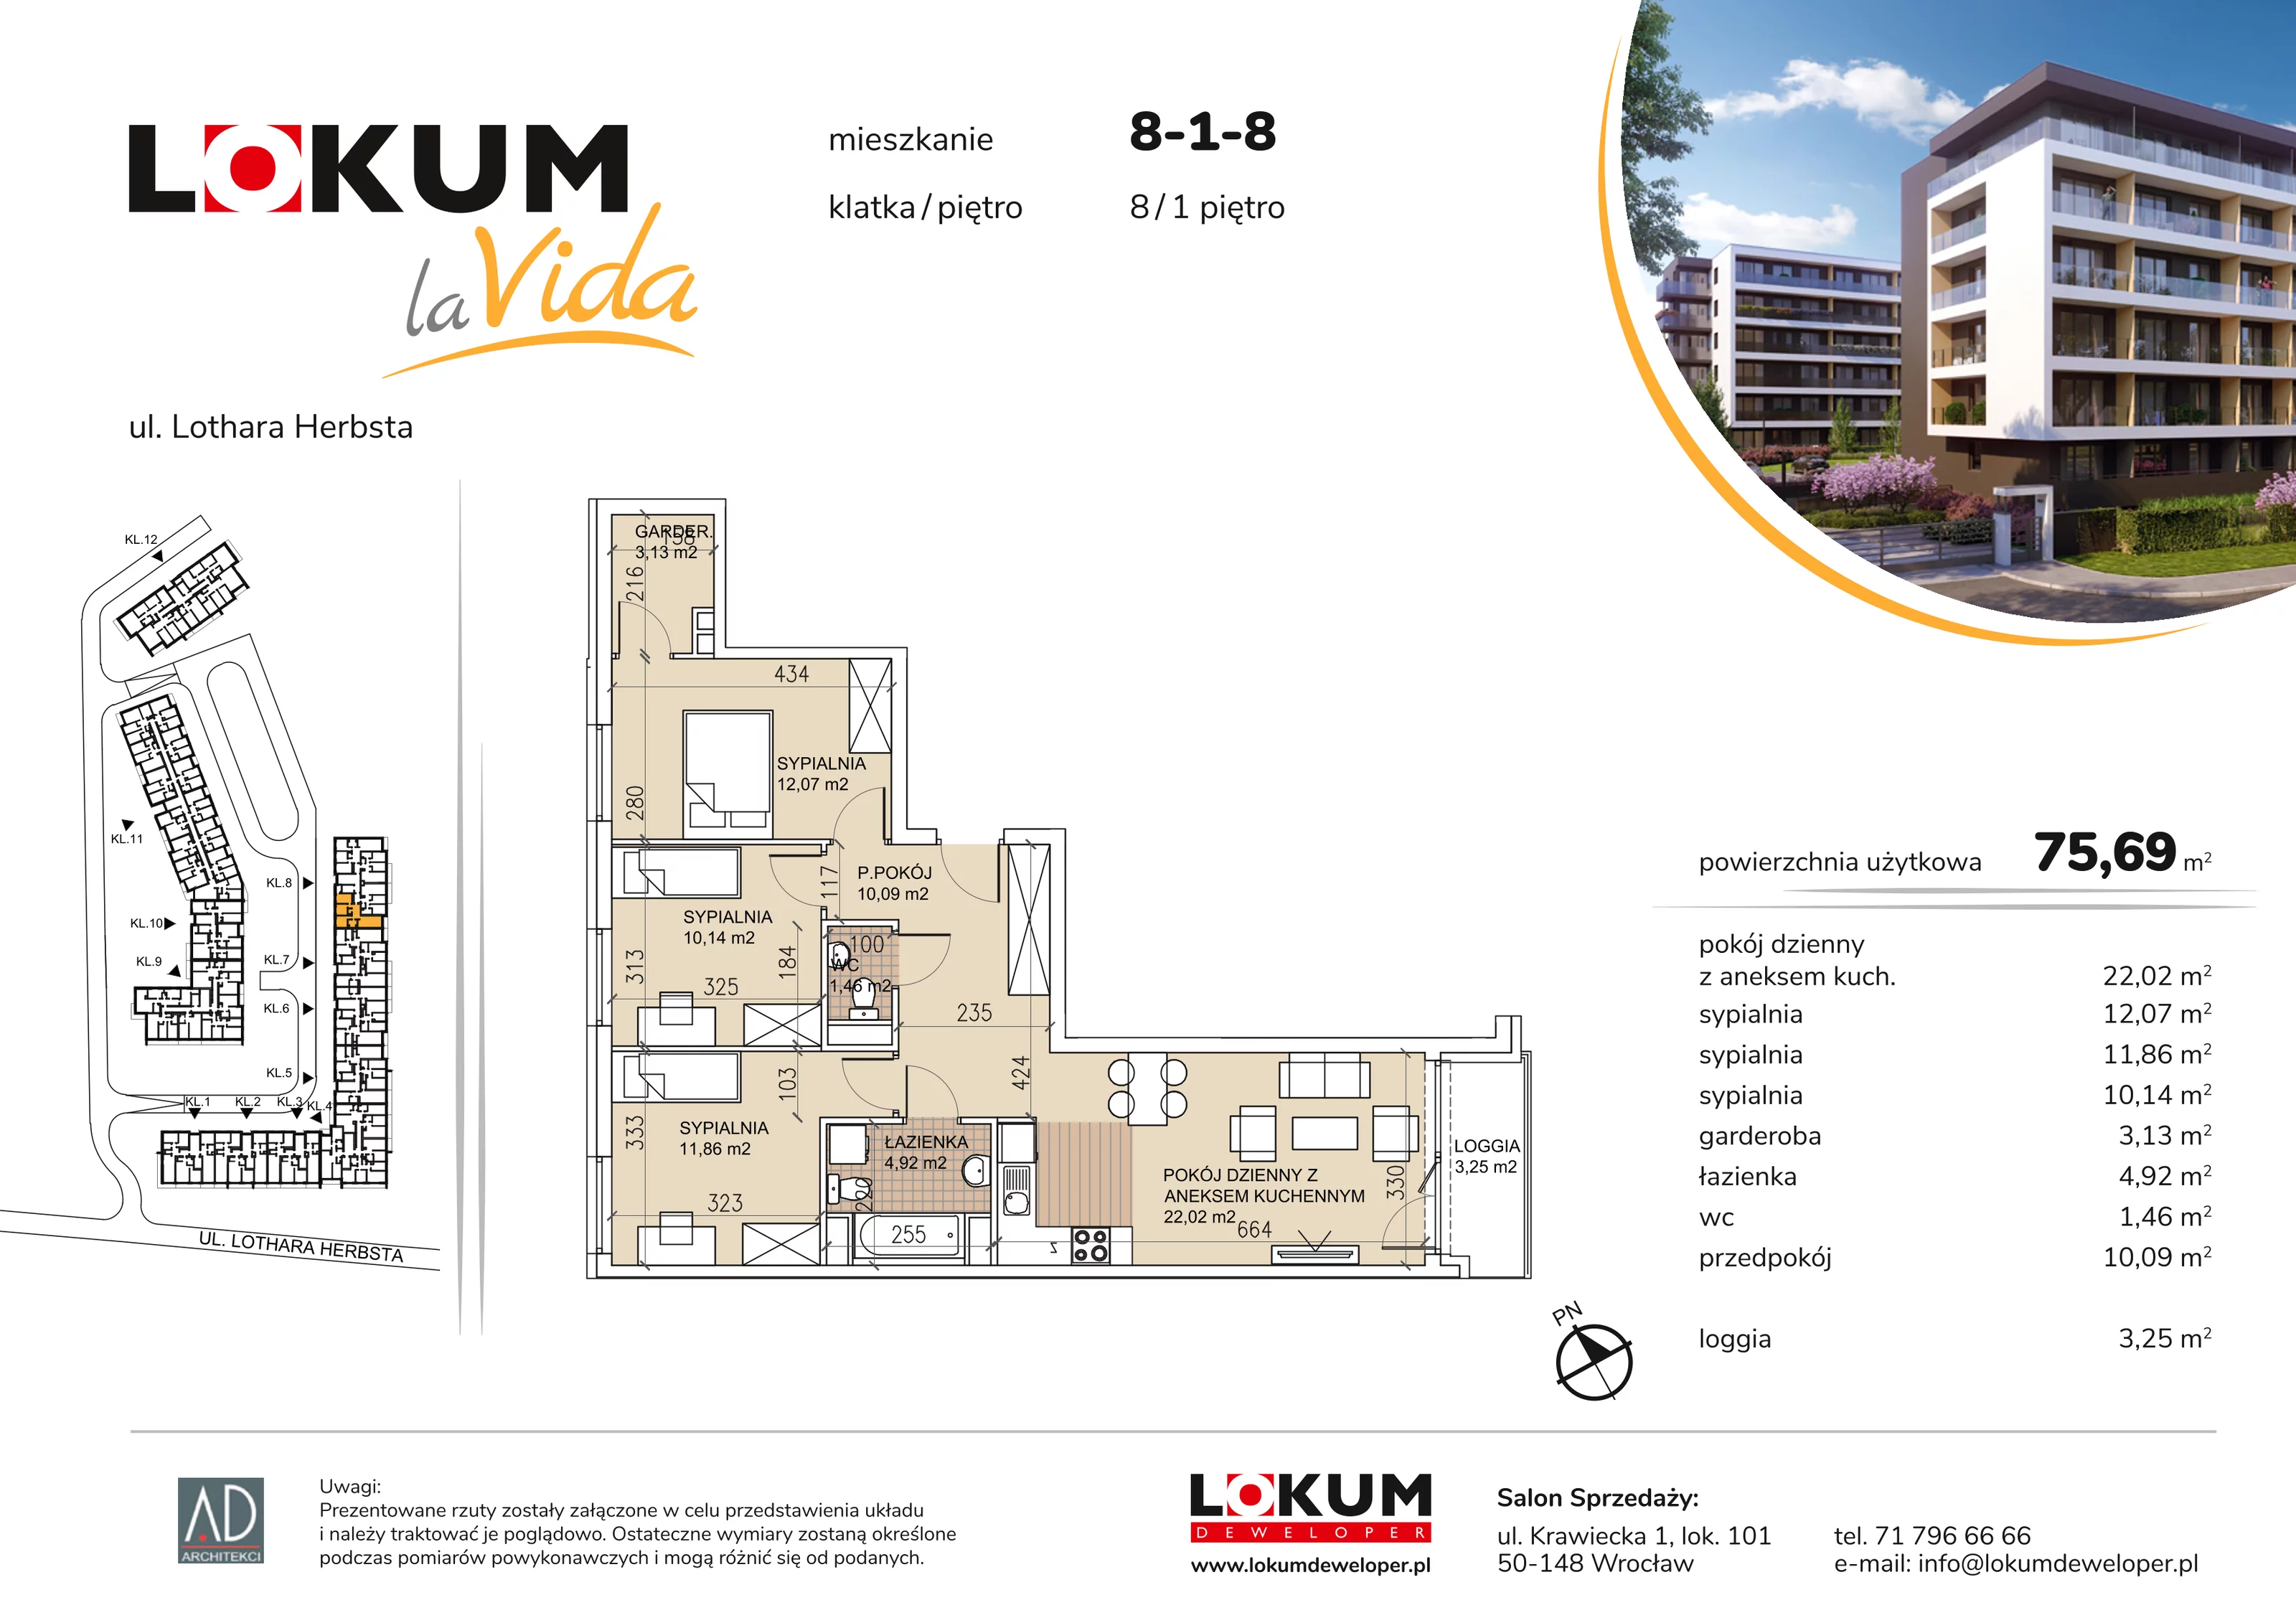 Mieszkanie 75,69 m², piętro 1, oferta nr 8-1-8, Lokum la Vida, Wrocław, Sołtysowice, ul. Lothara Herbsta